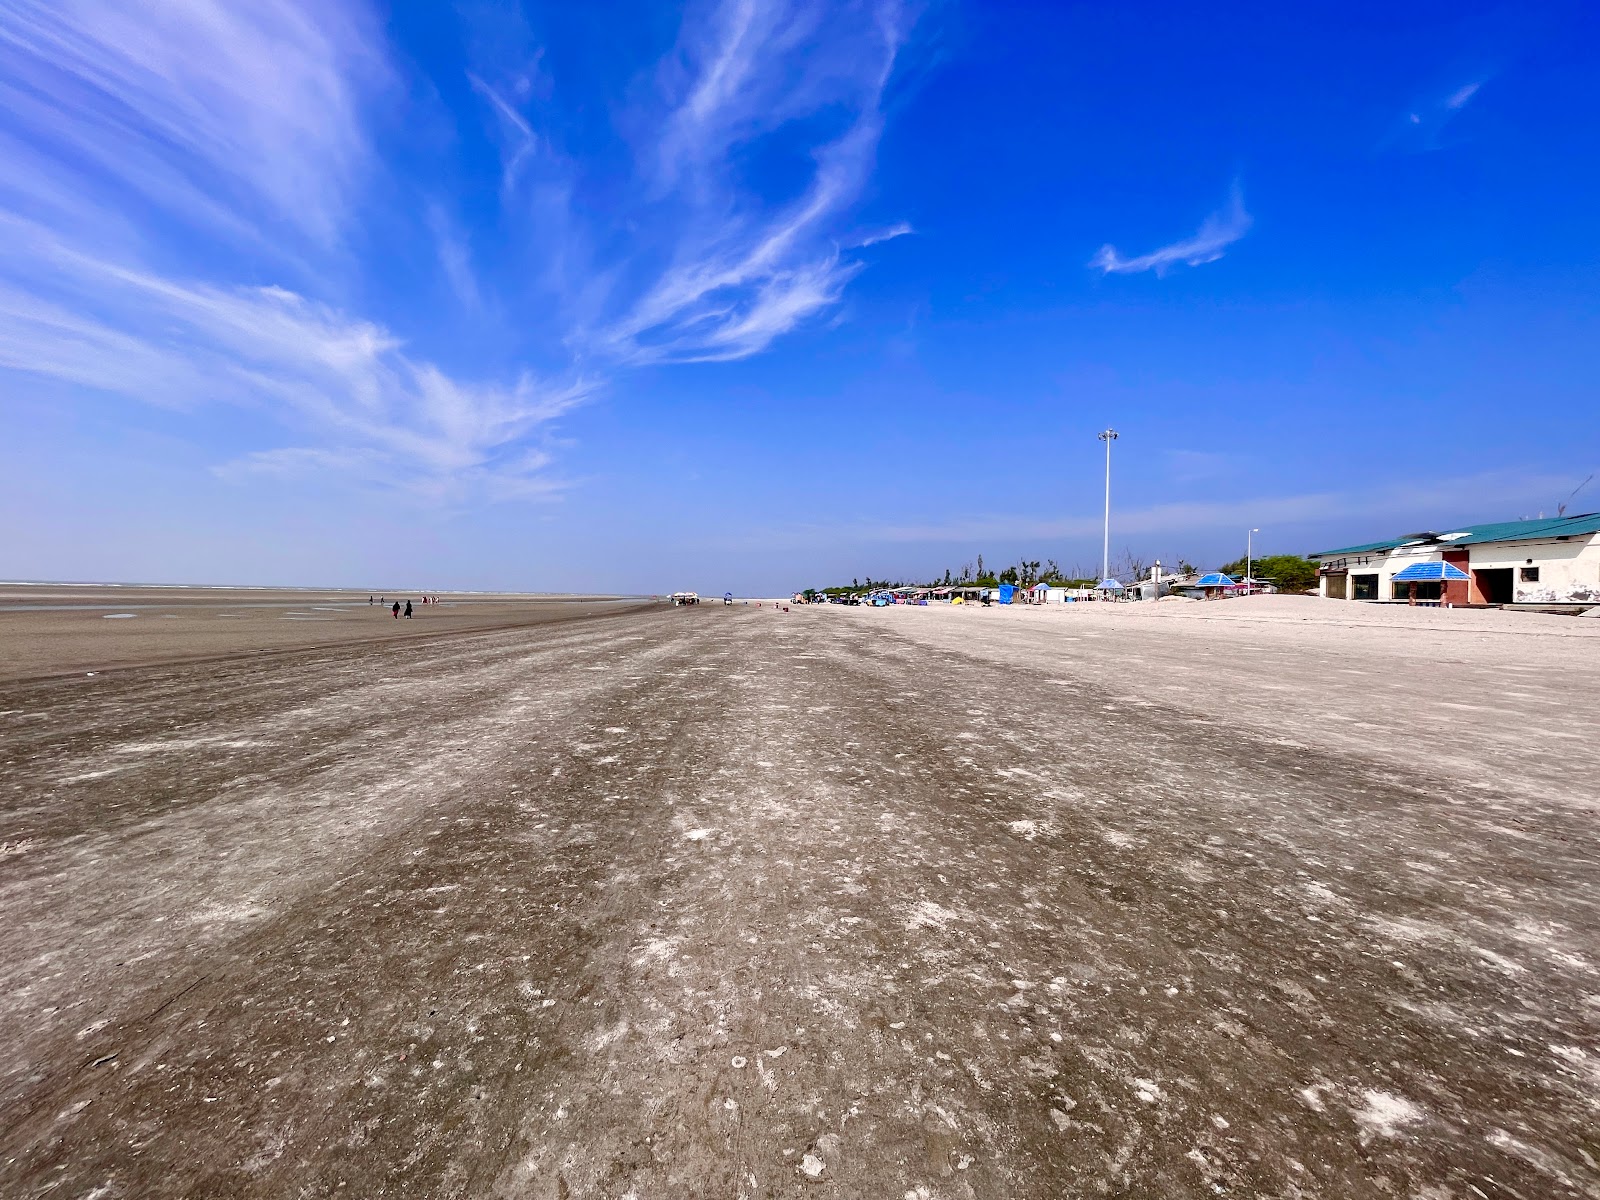 BakKhali Sea Beach'in fotoğrafı parlak kum yüzey ile